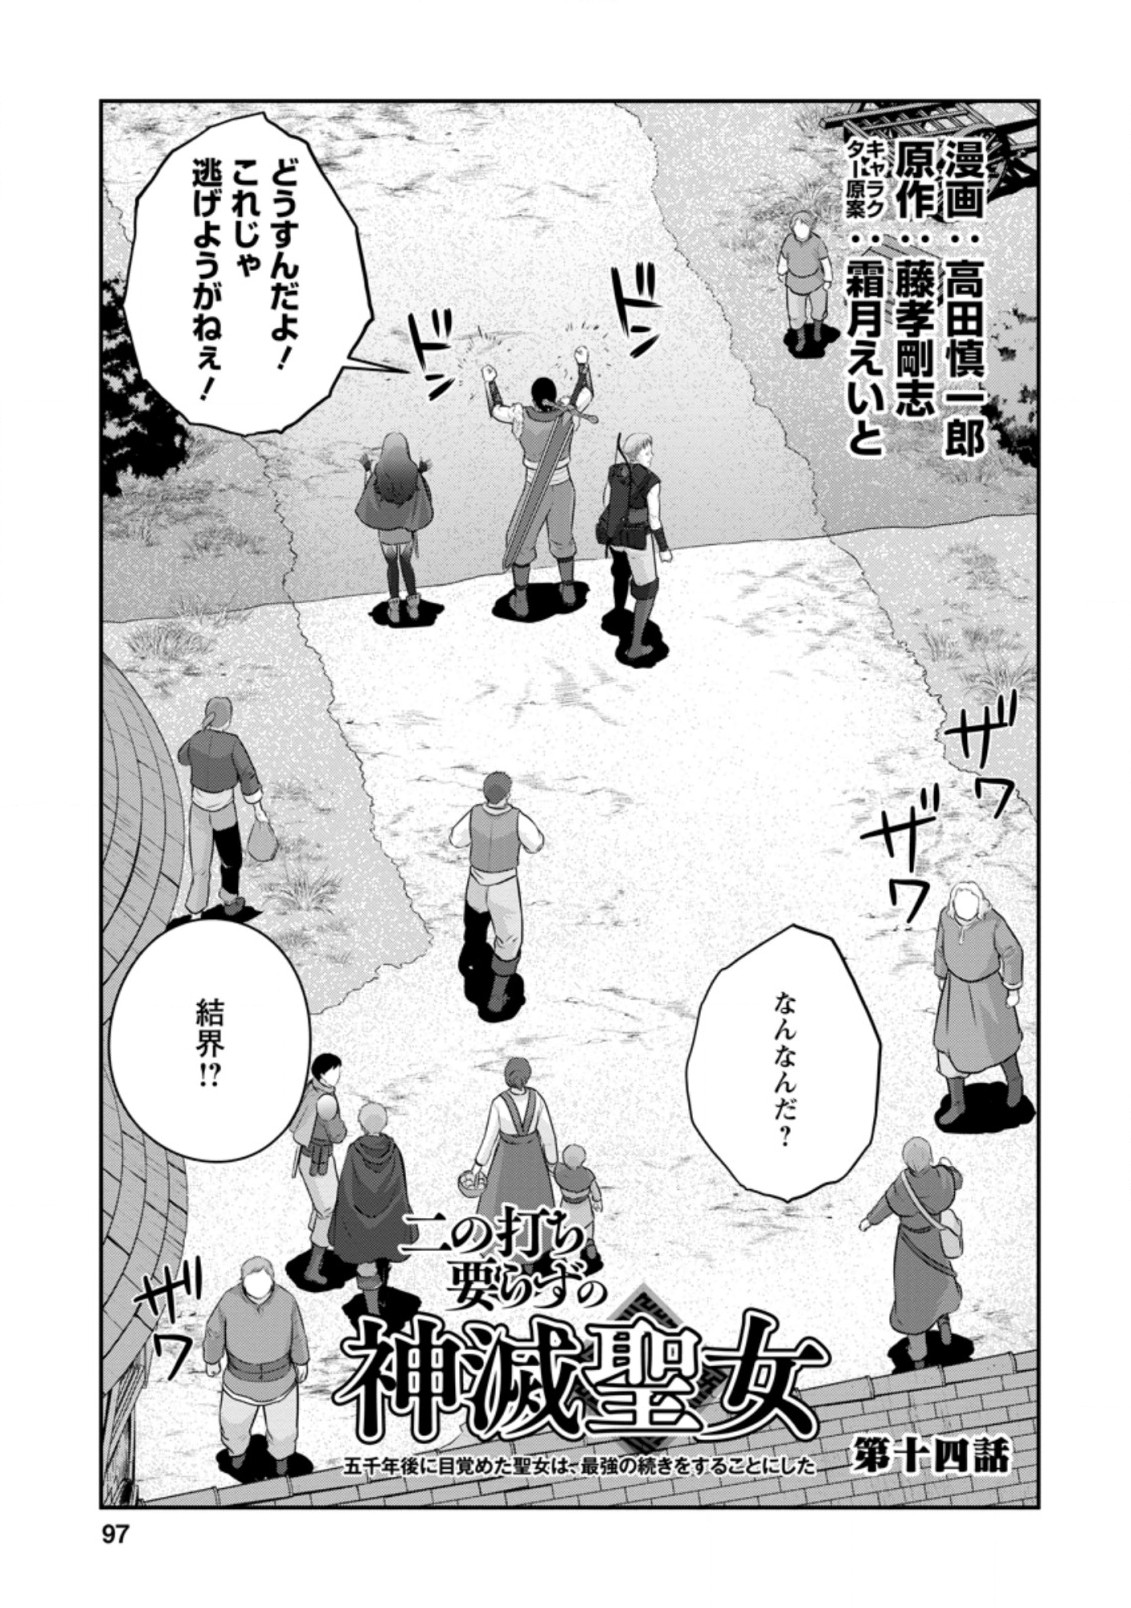 ni-no-uchi-irazu-no-kami-metsu-seijo〜-go-sen-nen-go-ni-mezameta-seijo-wa-saikyou-no-tsudzuki-o-suru-koto-ni-shita-〜 - Chapter 14.1 - Page 1